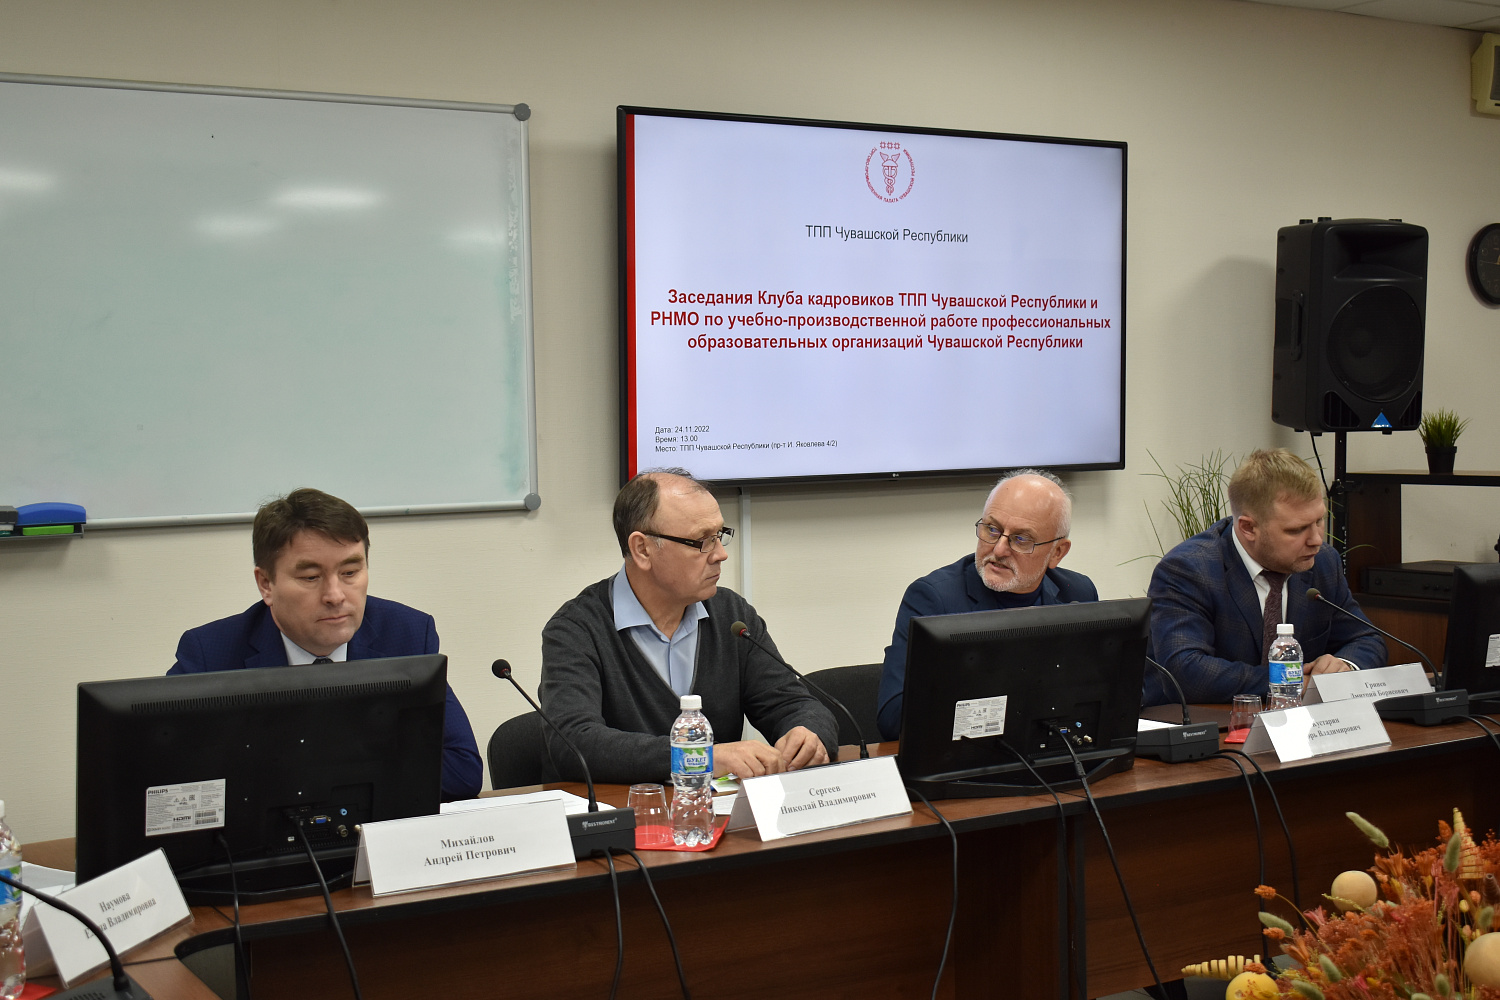 24 ноября 2022 г. в конференц-зале ТПП Чувашской Республики состоялось расширенное заседание Клуба Кадровиков ТПП Чувашской Республики. 